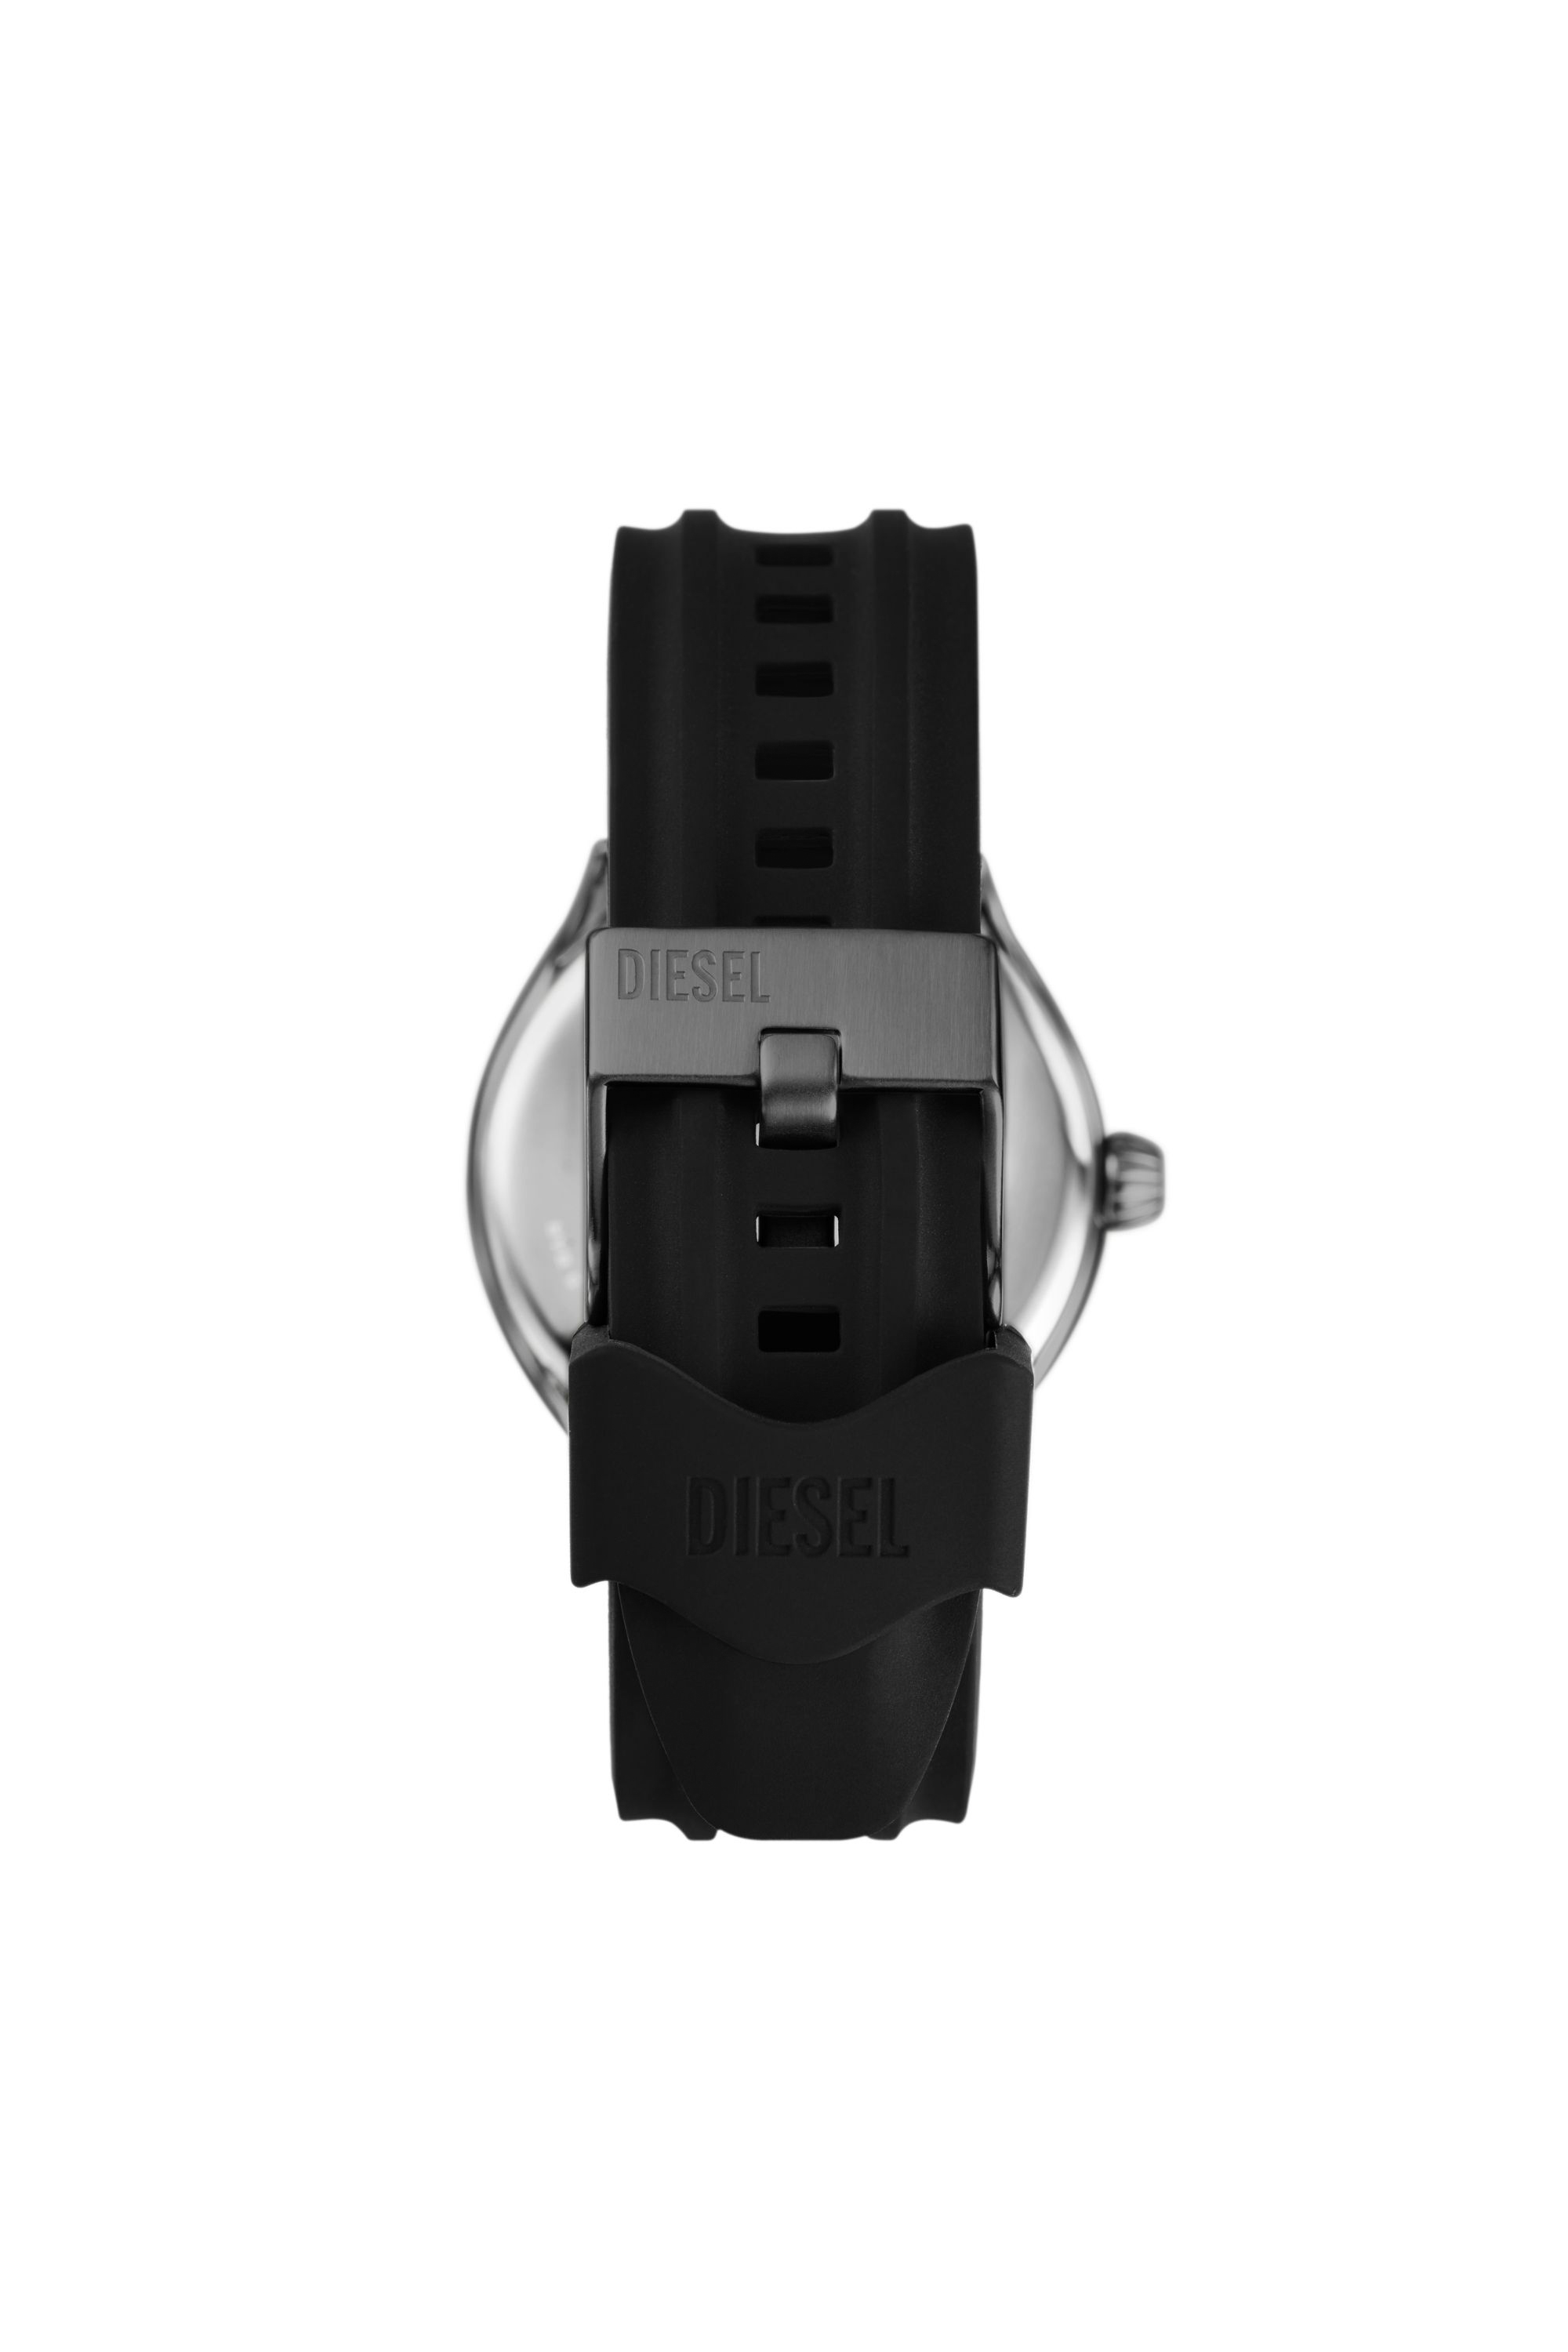 Diesel - DZ2201, Man Streamline three-hand black silicone watch in Black - Image 3